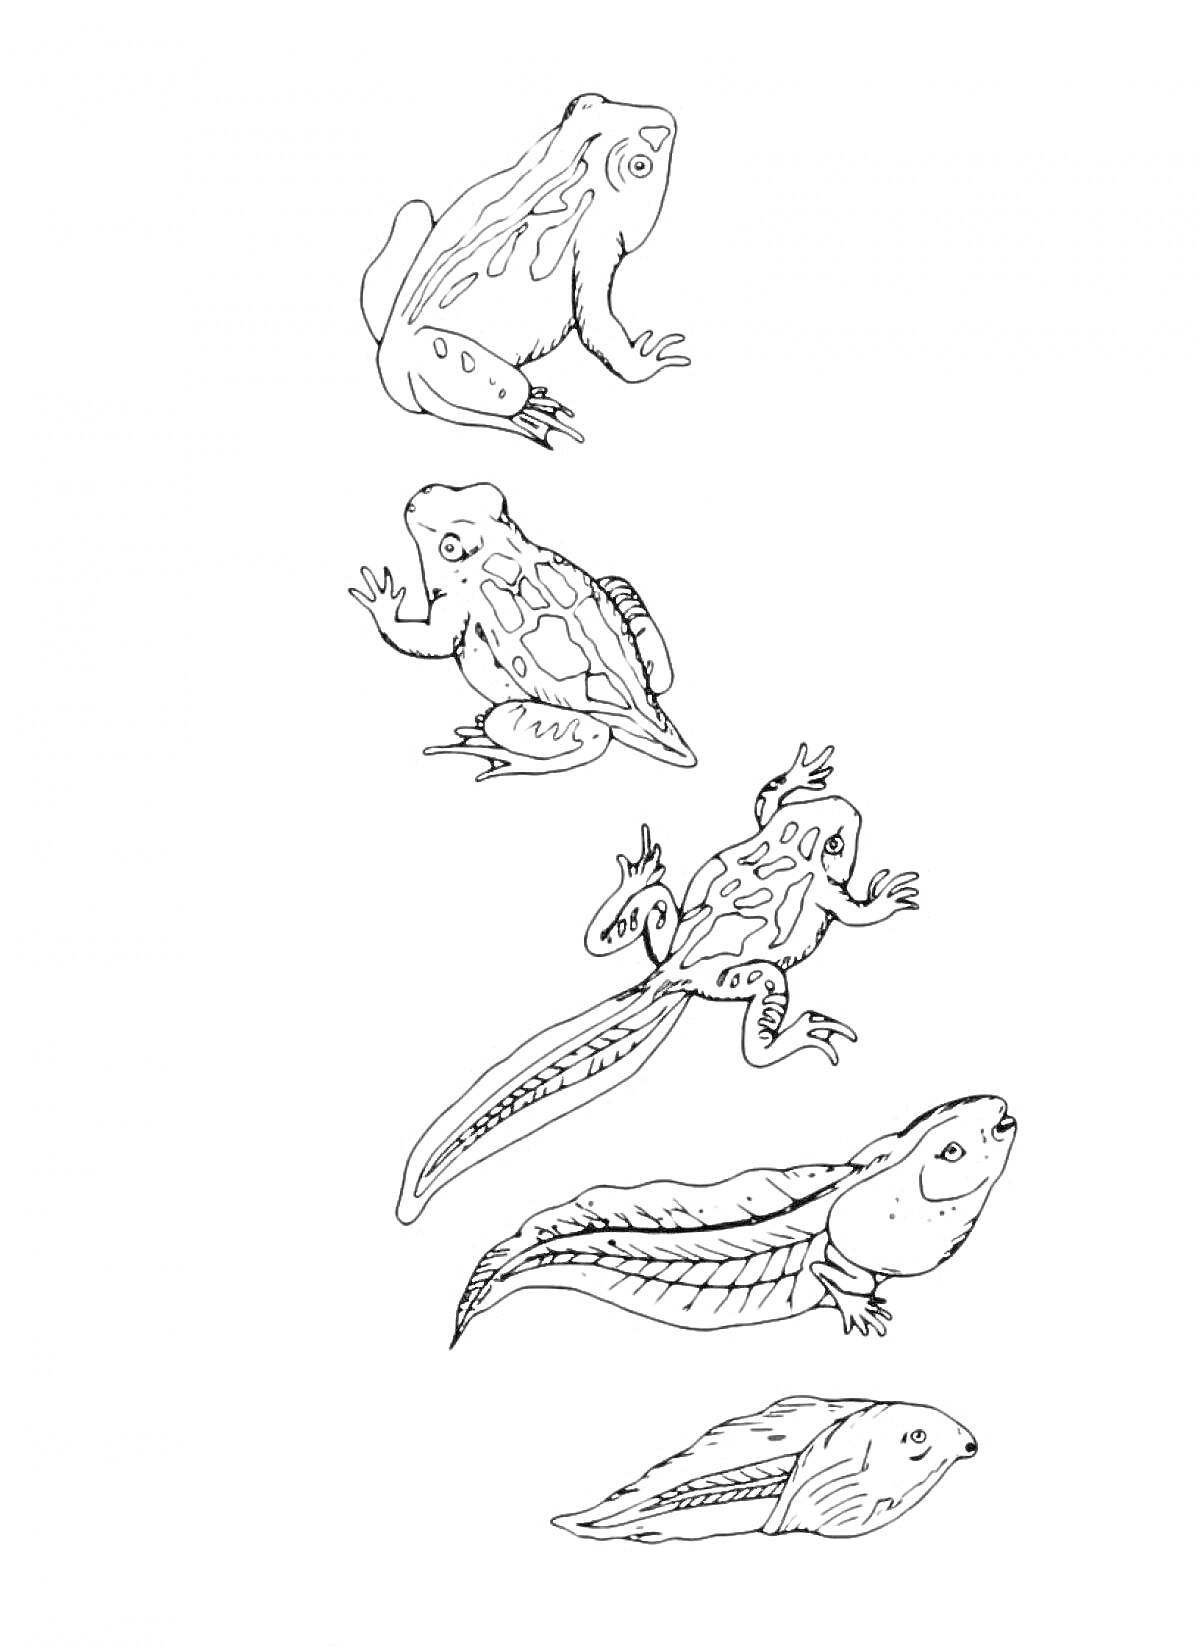 Раскраска Эволюция лягушки: головастик, головастик с хвостом, головастик с конечностями, лягушка с хвостом, взрослая лягушка